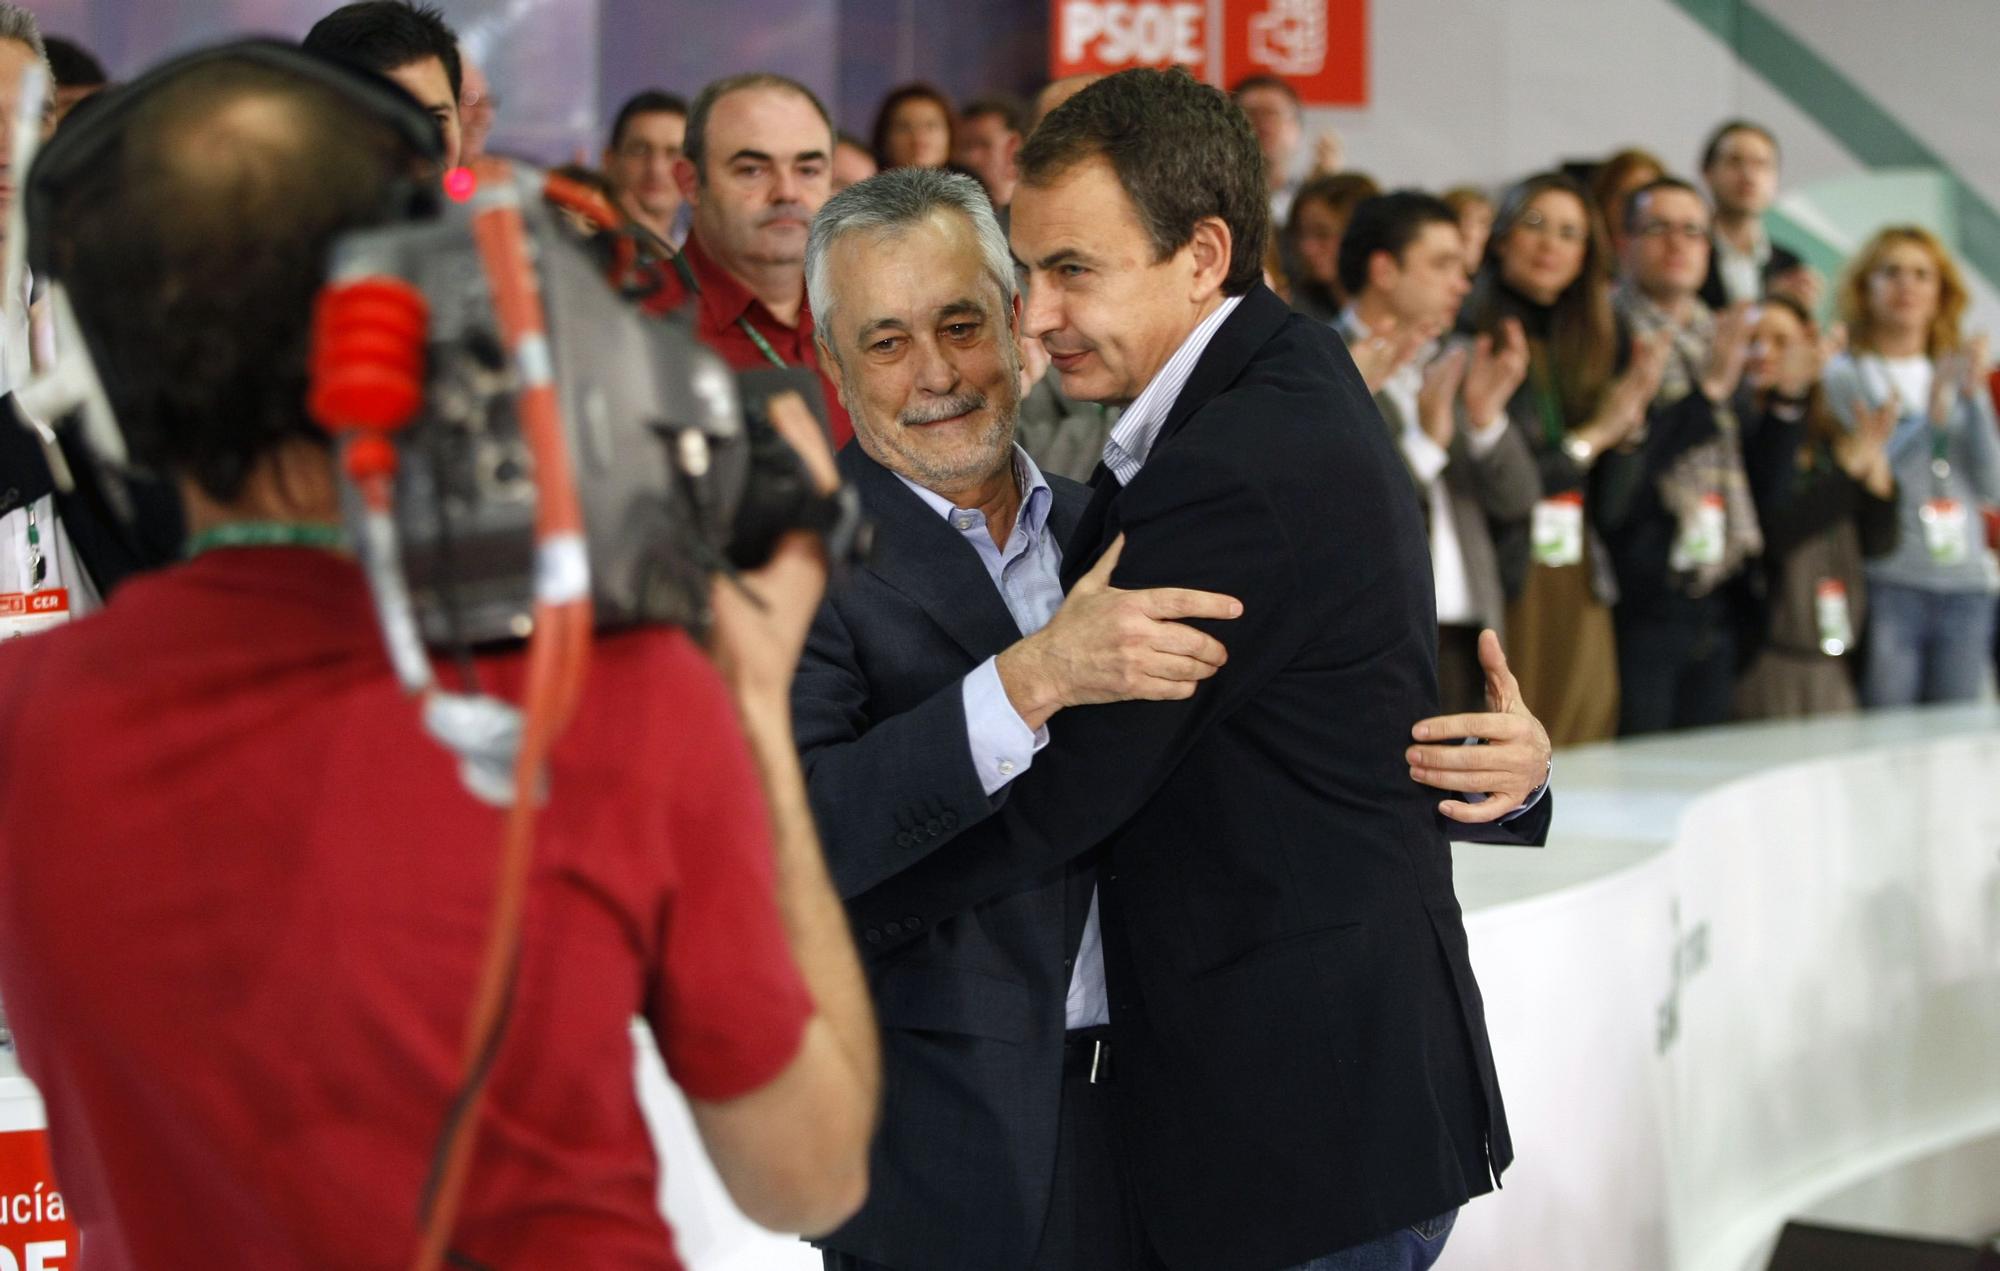 Sevilla 13-03-2010 Clausura del Congreso extraordinario del Psoe andaluz donde salio como nuevo secretario general, Jose Antonio Griñan, en la foto el Prsidente Zapatero felicita a Griñan.